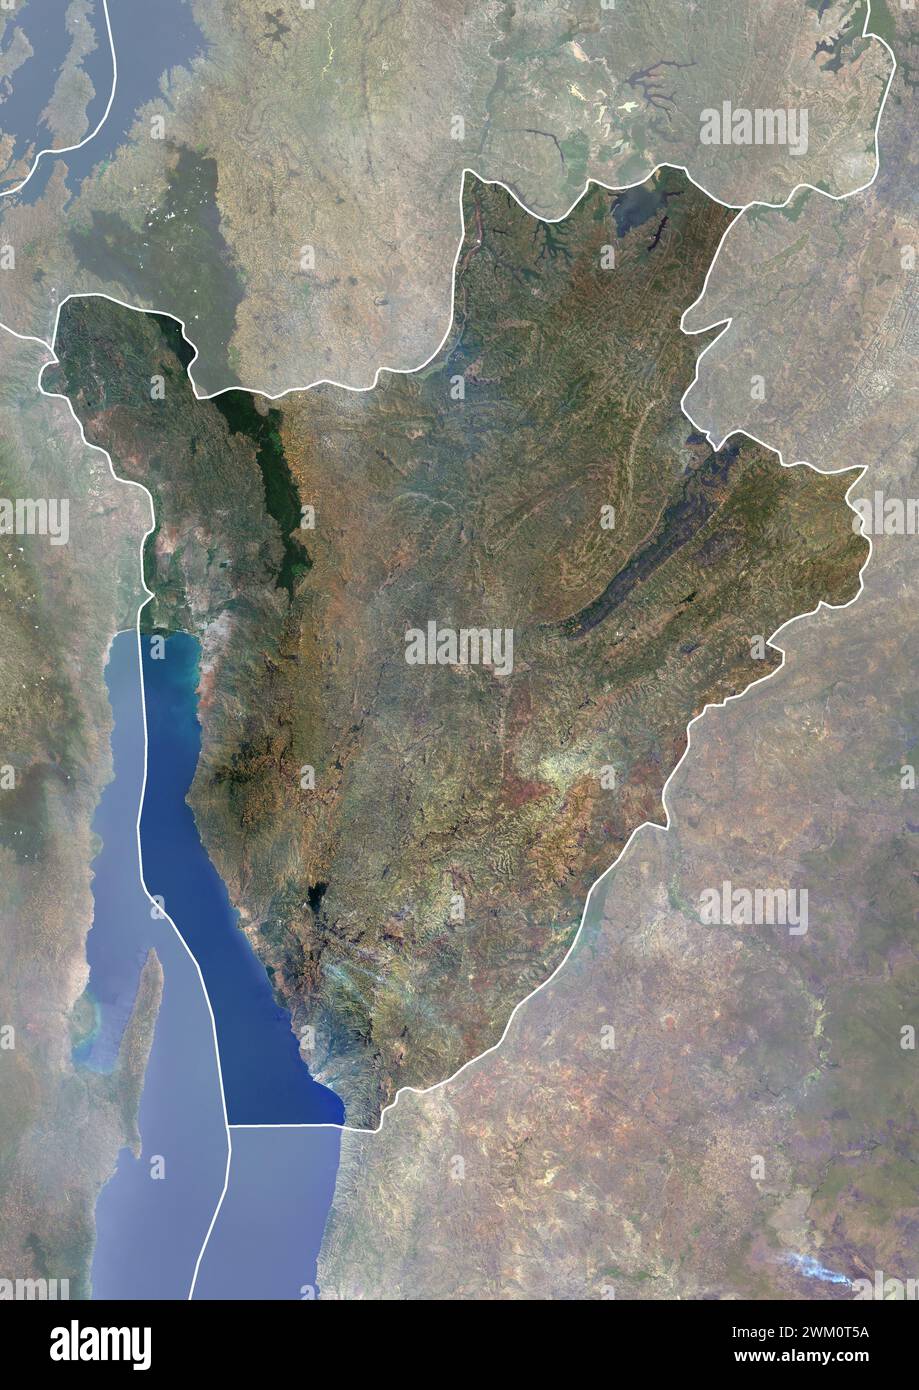 Immagine satellitare a colori del Burundi, con bordi e maschera. Il paese si trova nella Great Rift Valley. Il lago Tanganica si trova lungo il suo confine sud-occidentale. Foto Stock